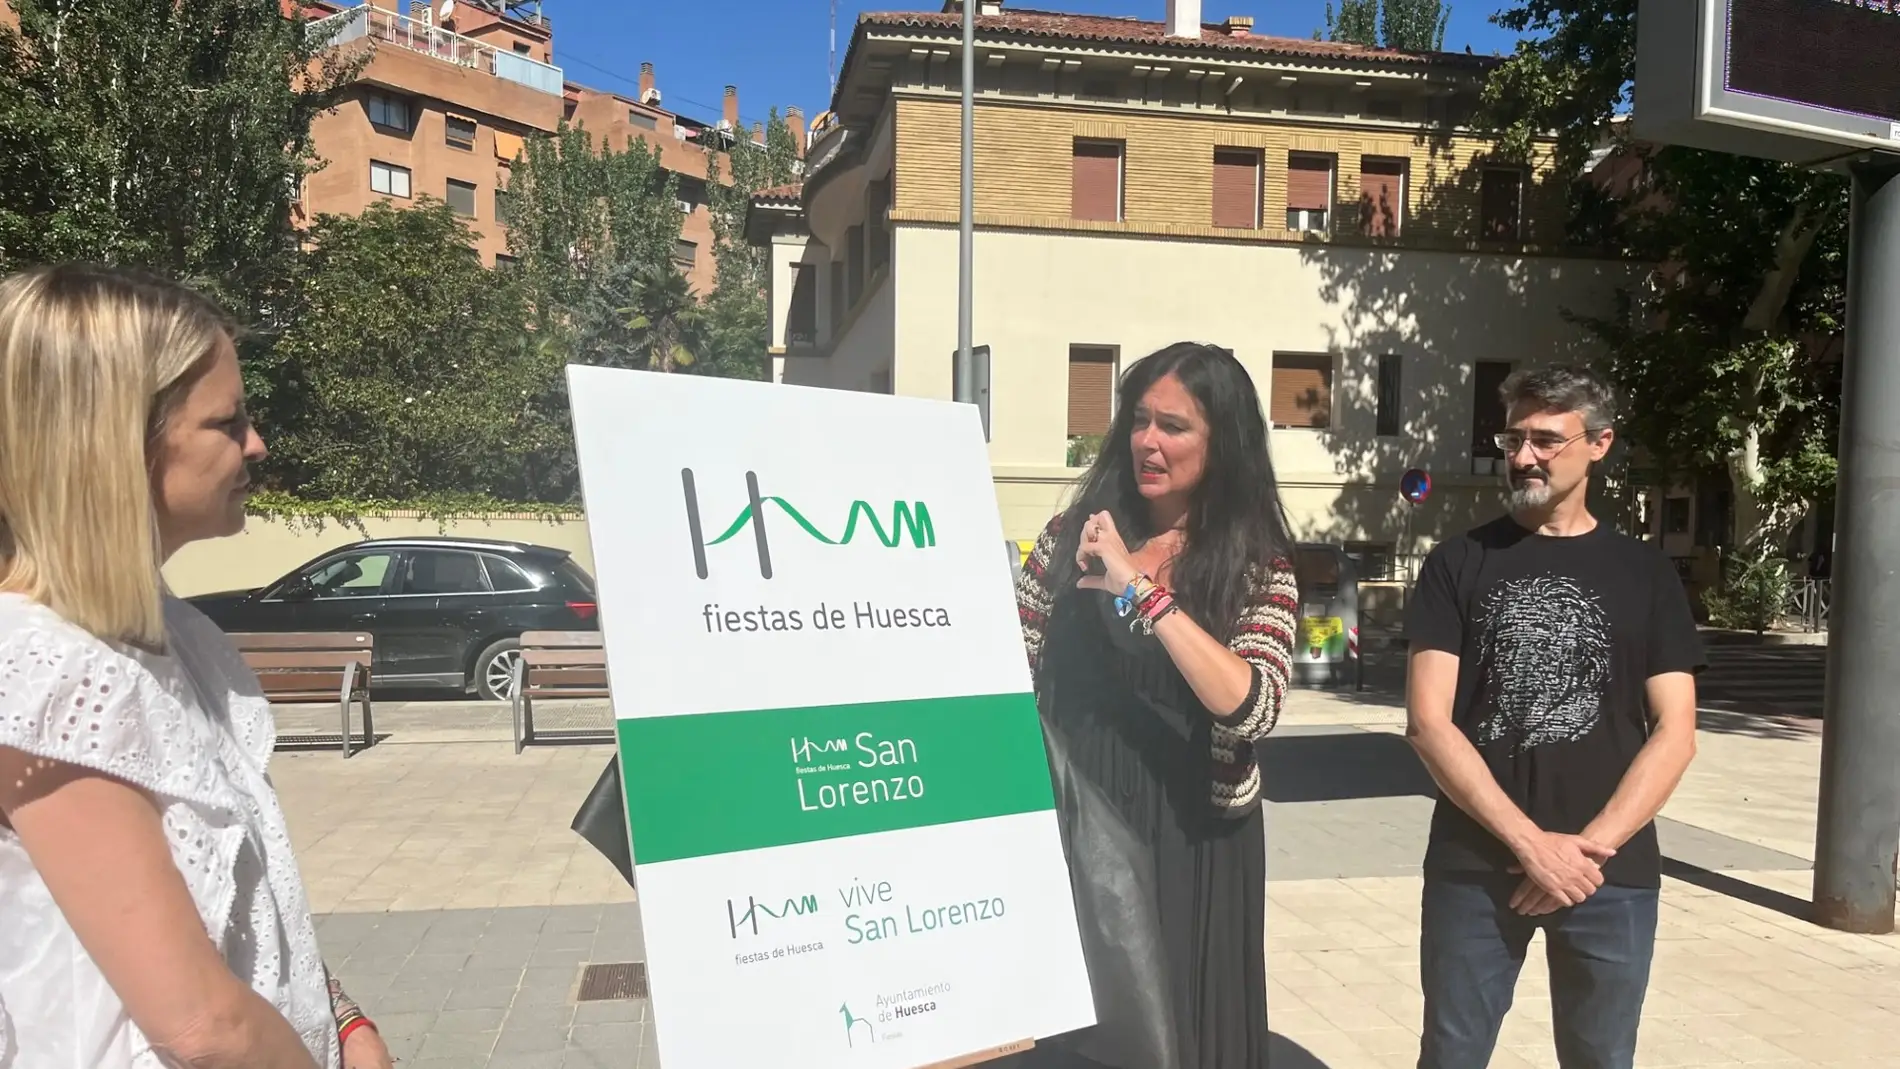 El Ayuntamiento de Huesca lanza una nueva imagen como seña de identidad de las fiestas